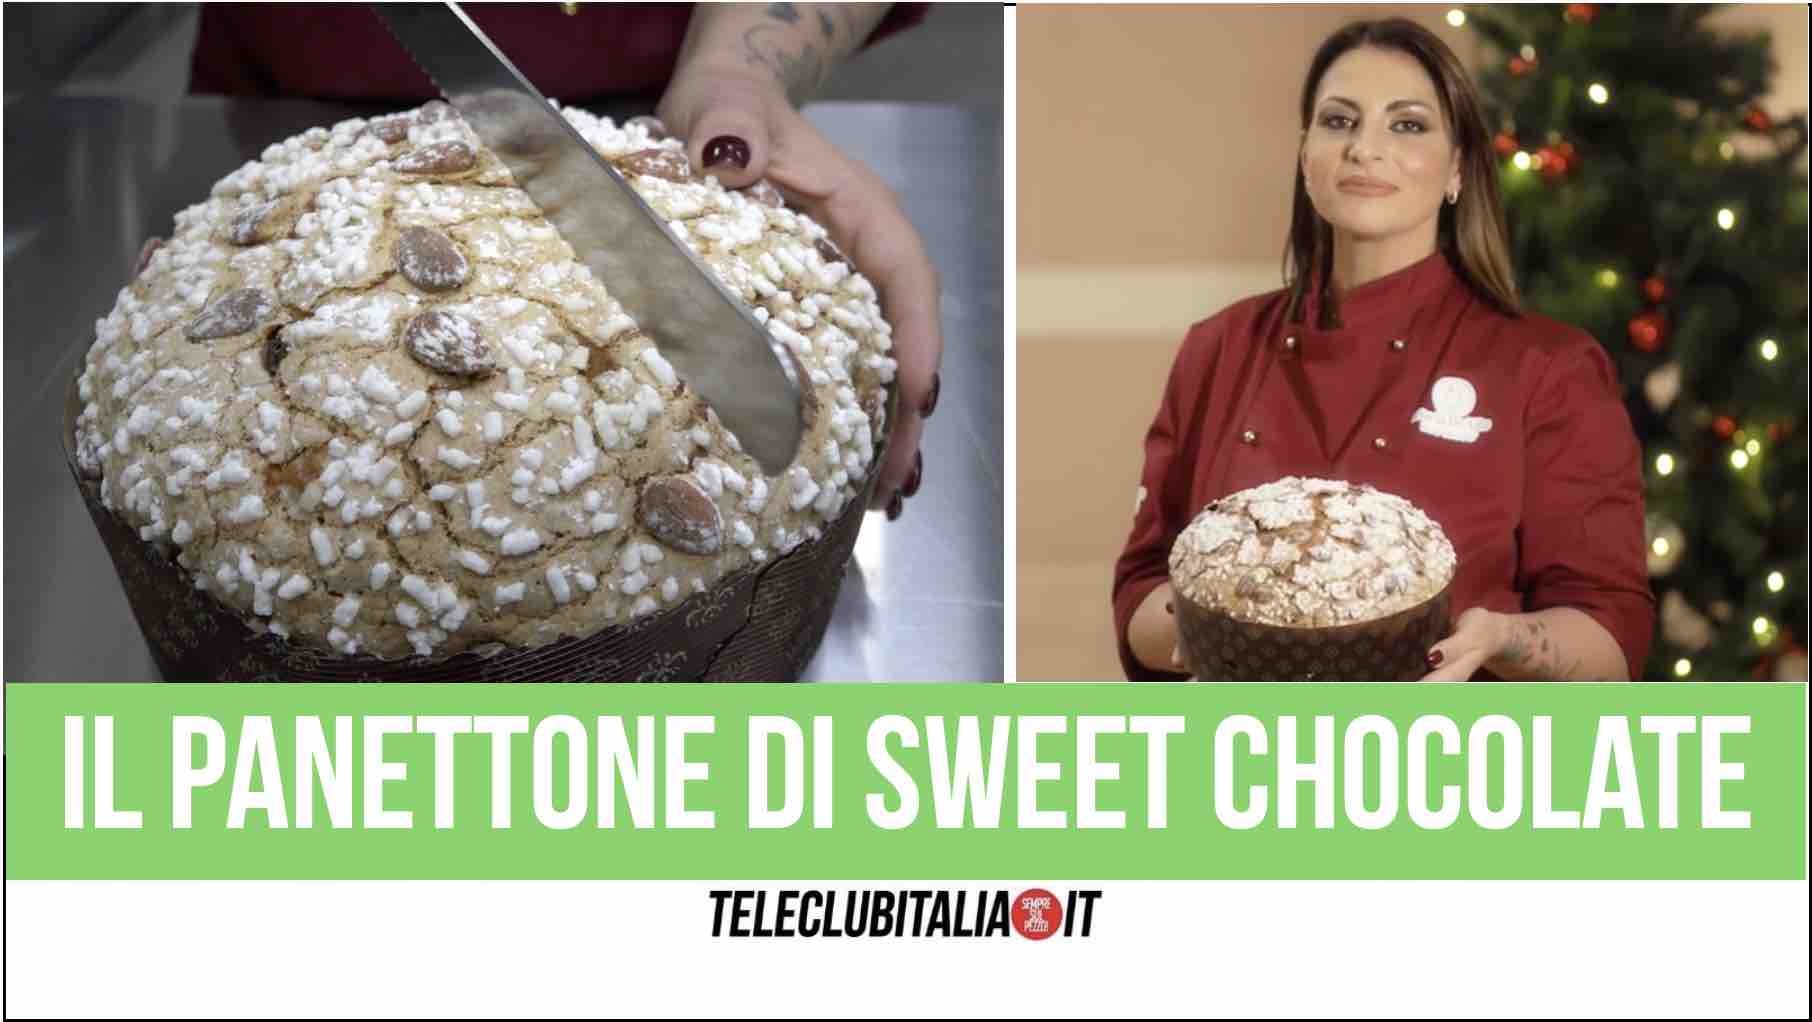 sweet chocolate giugliano pastry chef maria de vito